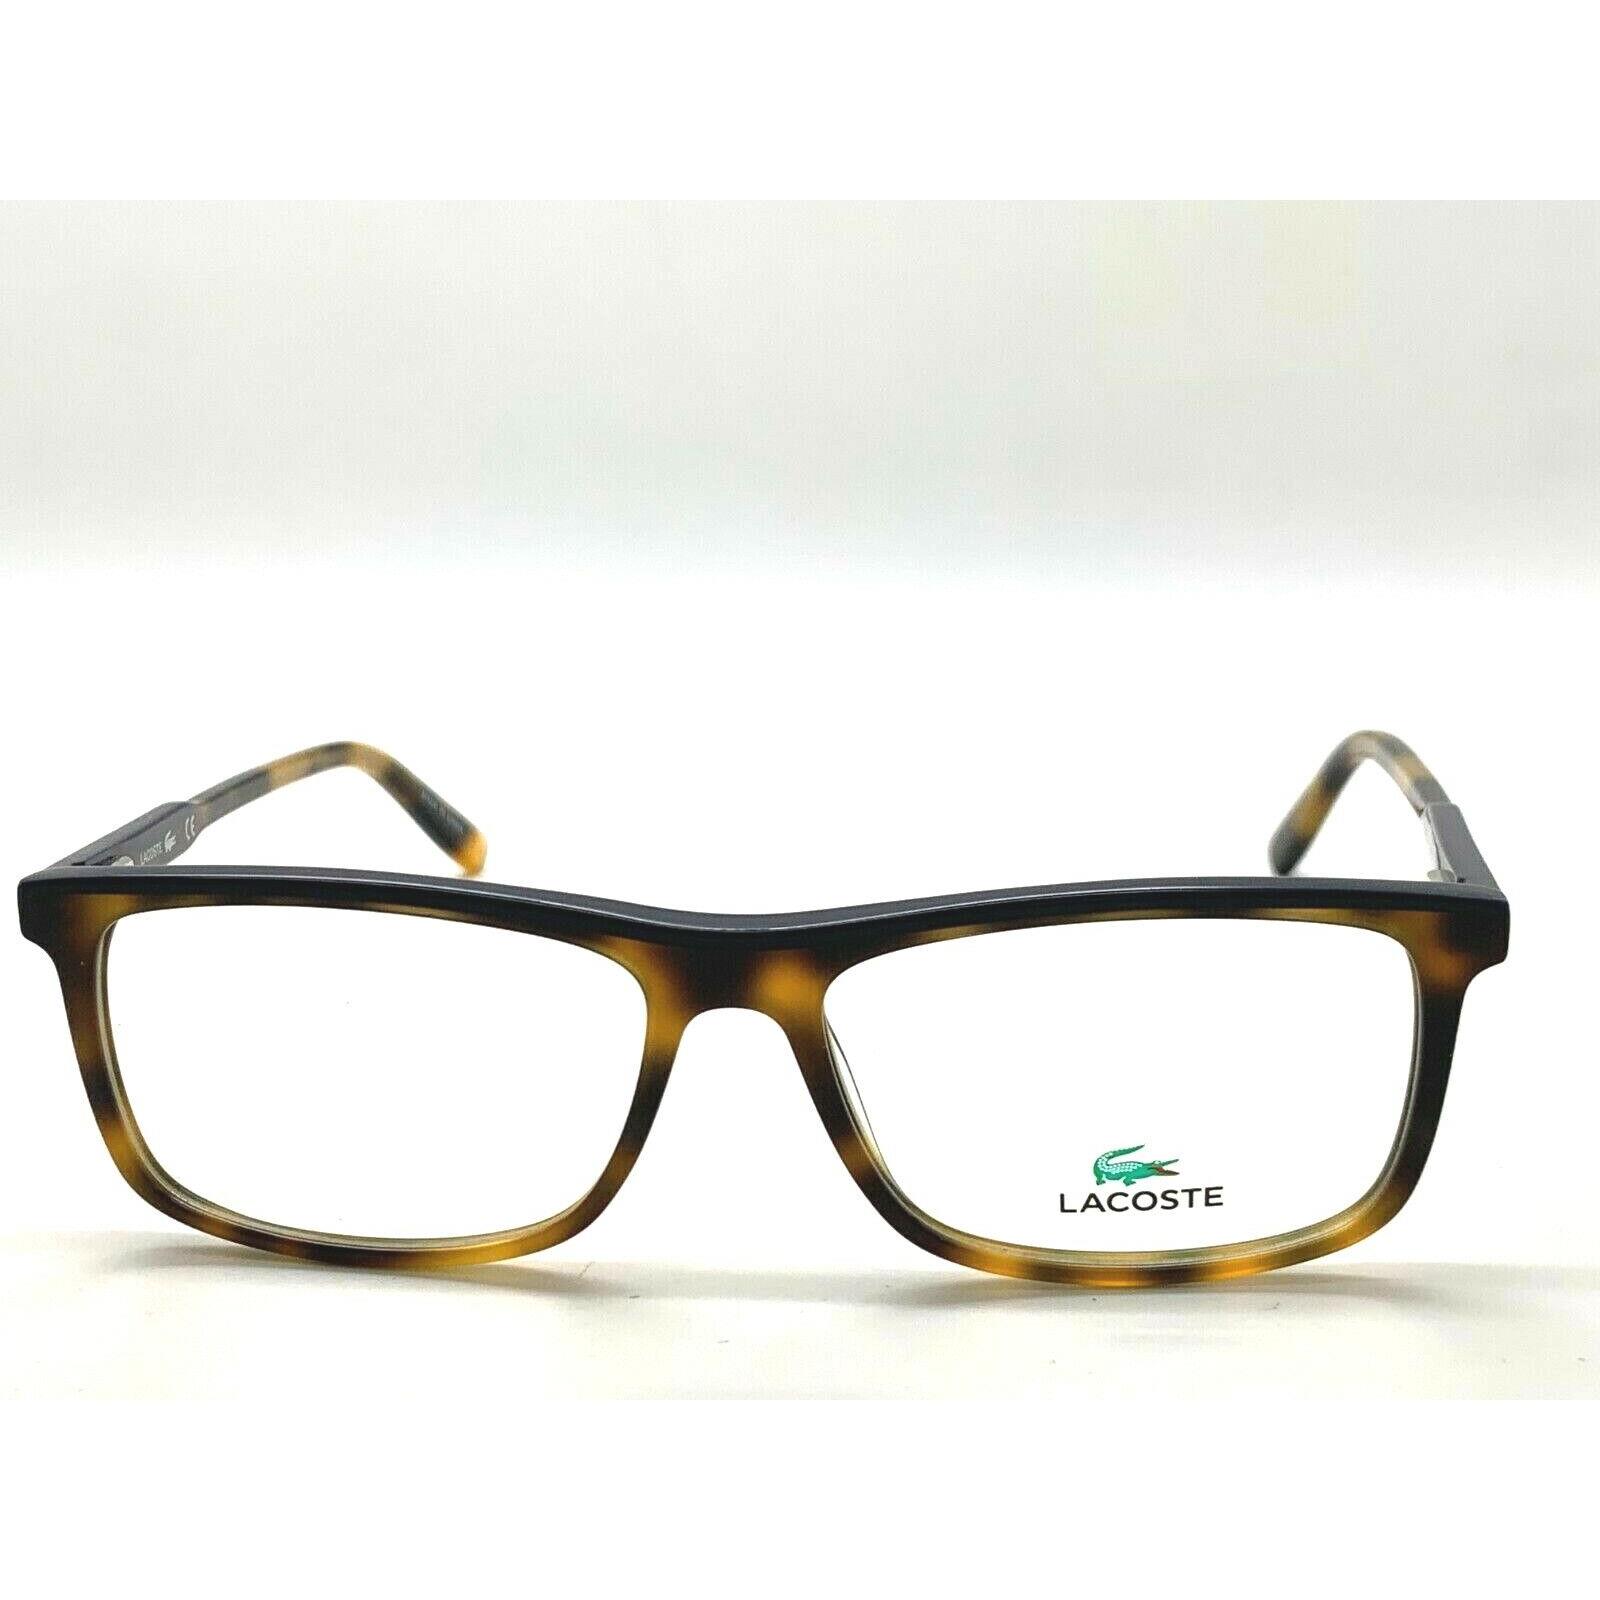 Lacoste eyeglasses  - HAVANA /DARK BLUE Frame